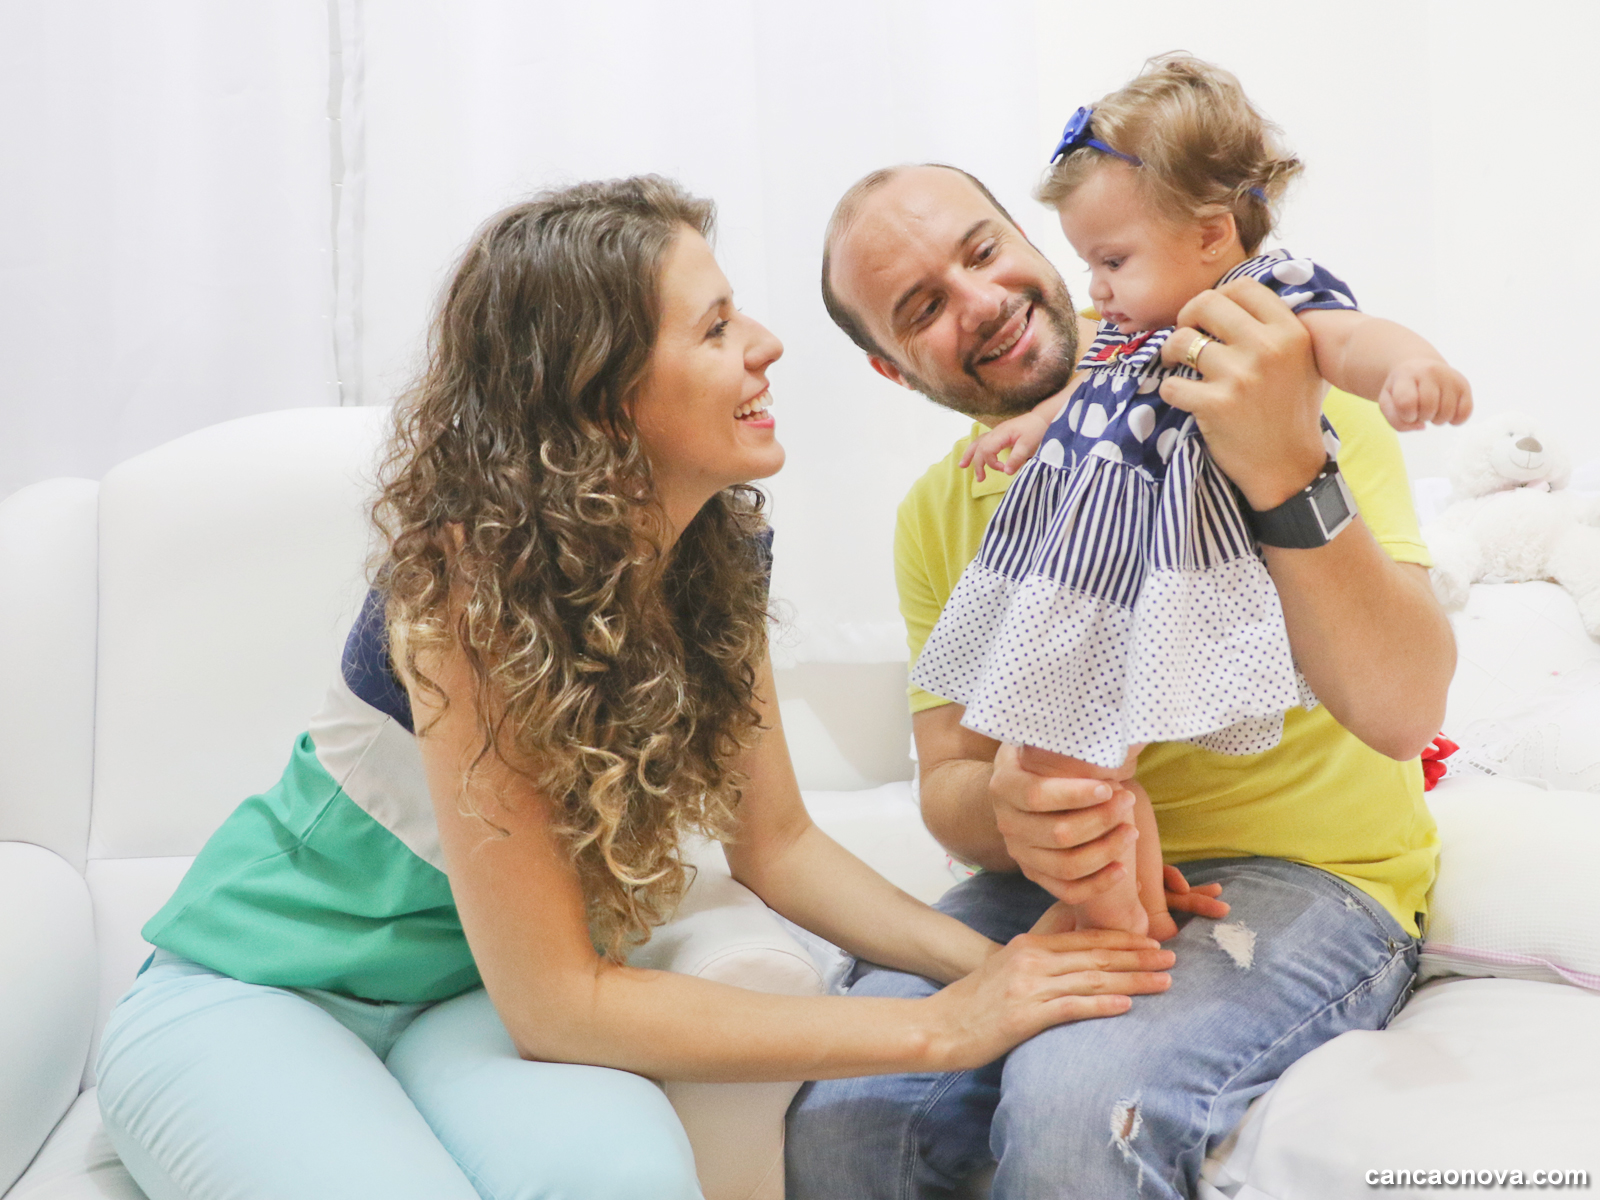 A cura interior gera um ambiente familiar saudável